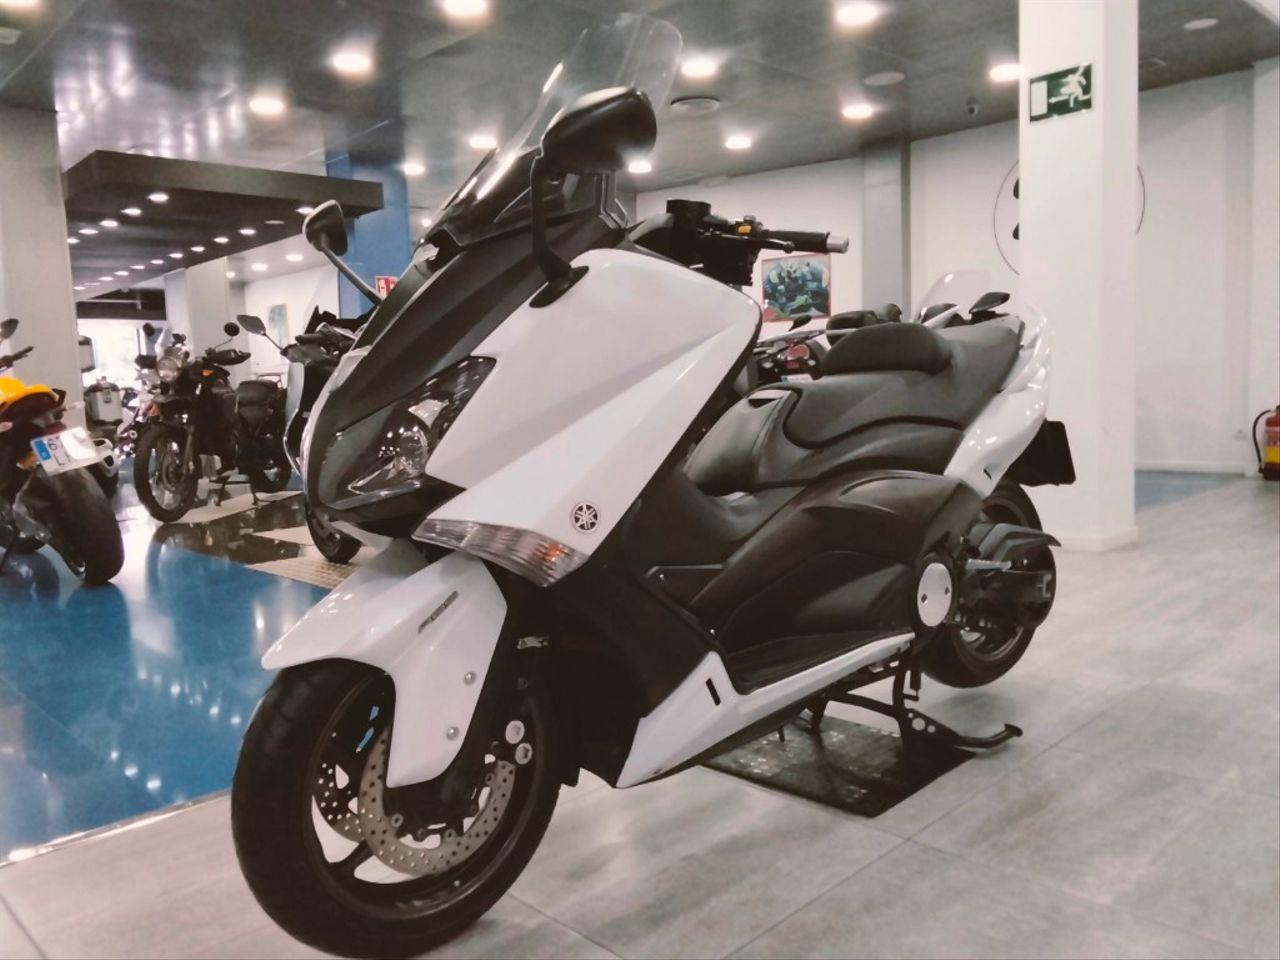 Moto YAMAHA TMAX 530 ABS de seguna mano del año 2014 en Málaga